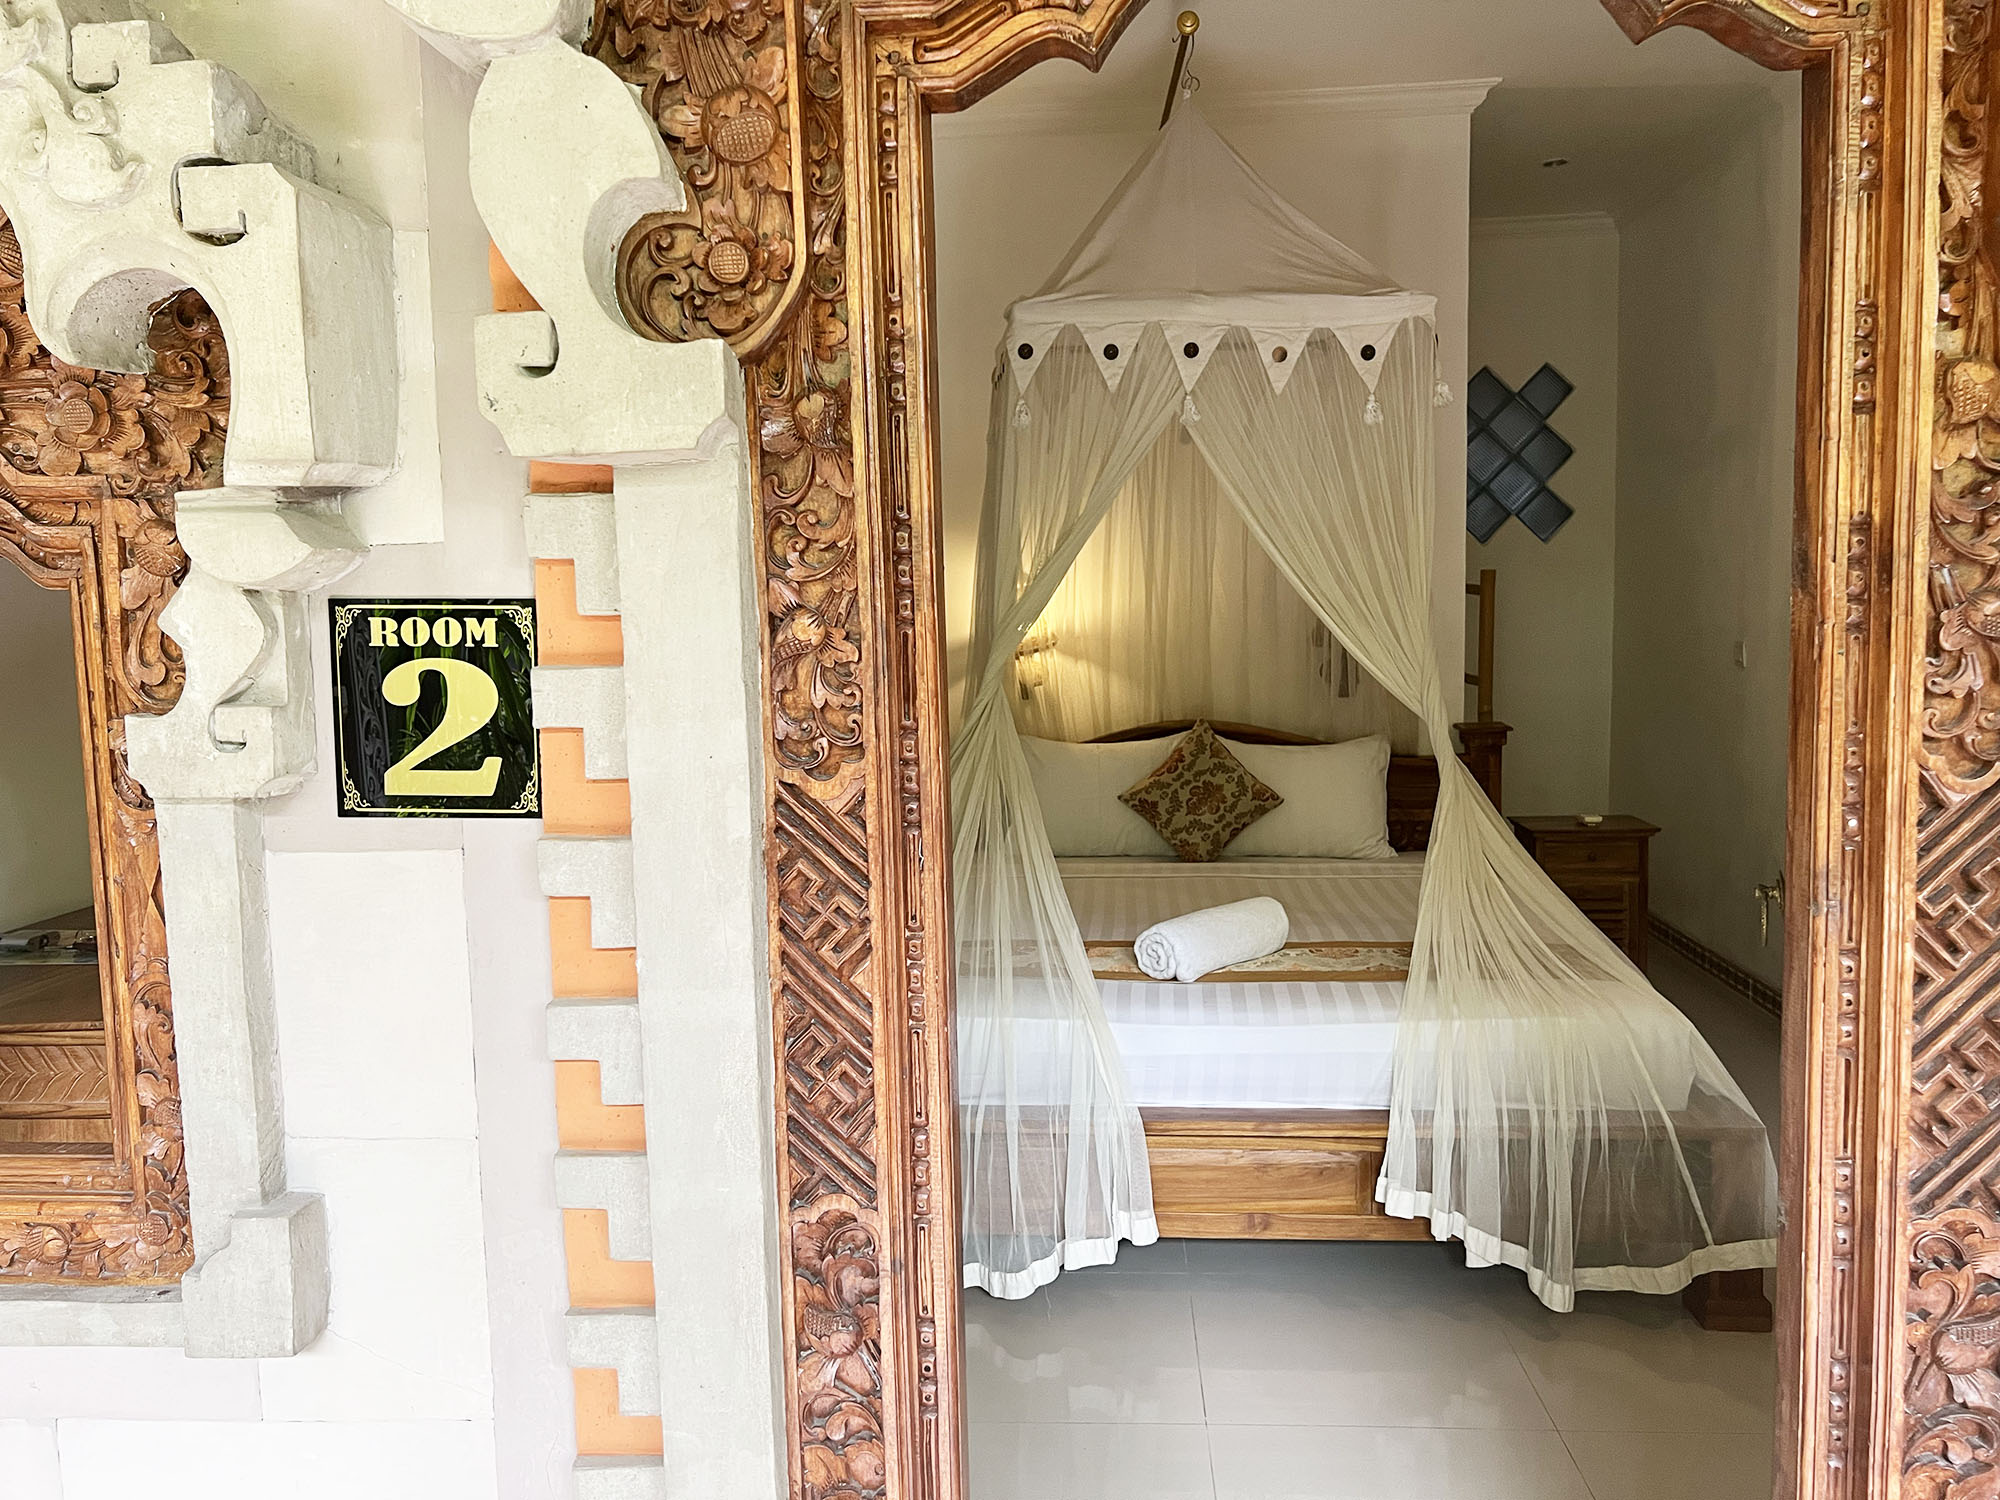 Bali: Praety Homestay - A Cozy Guesthouse in Ubud